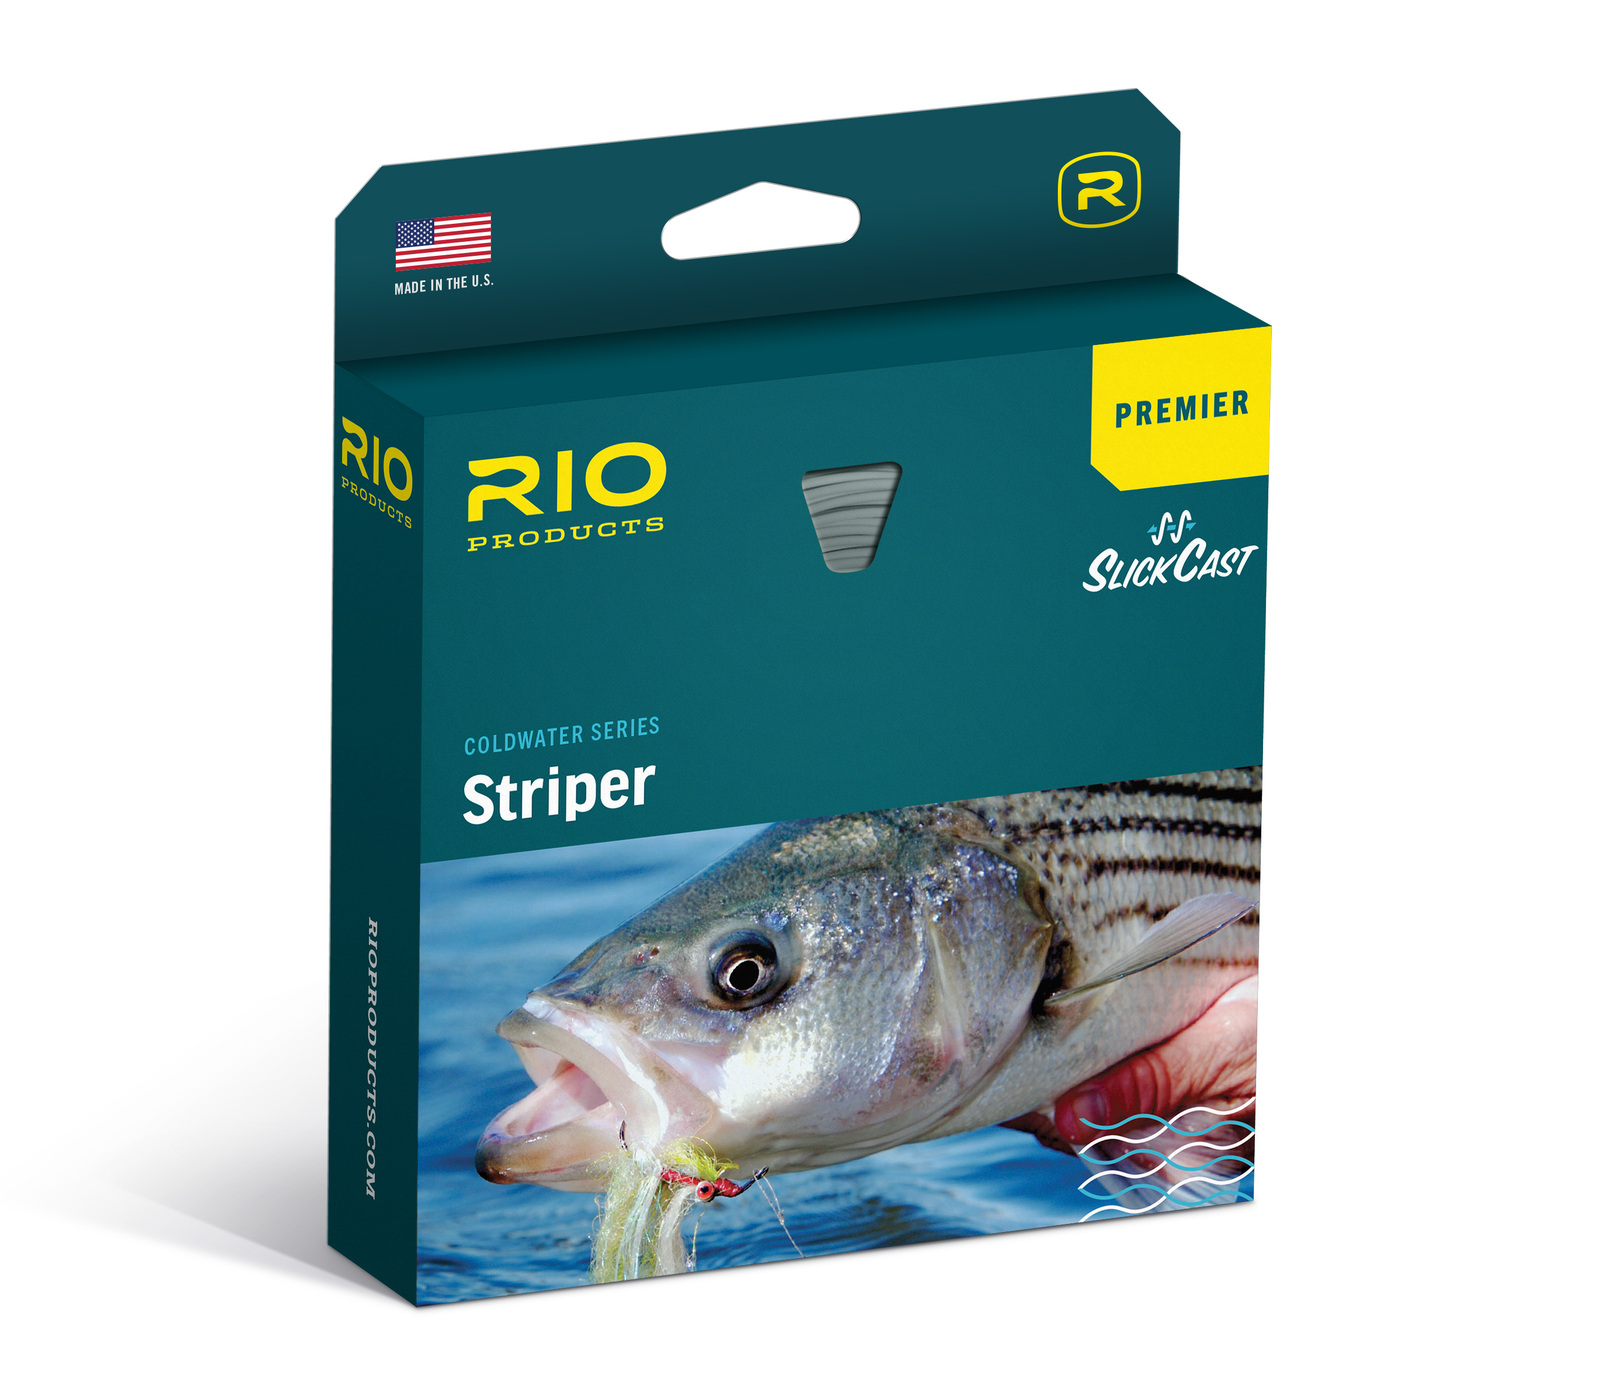 Rio Saltwater Coldwater Series Premier Striper